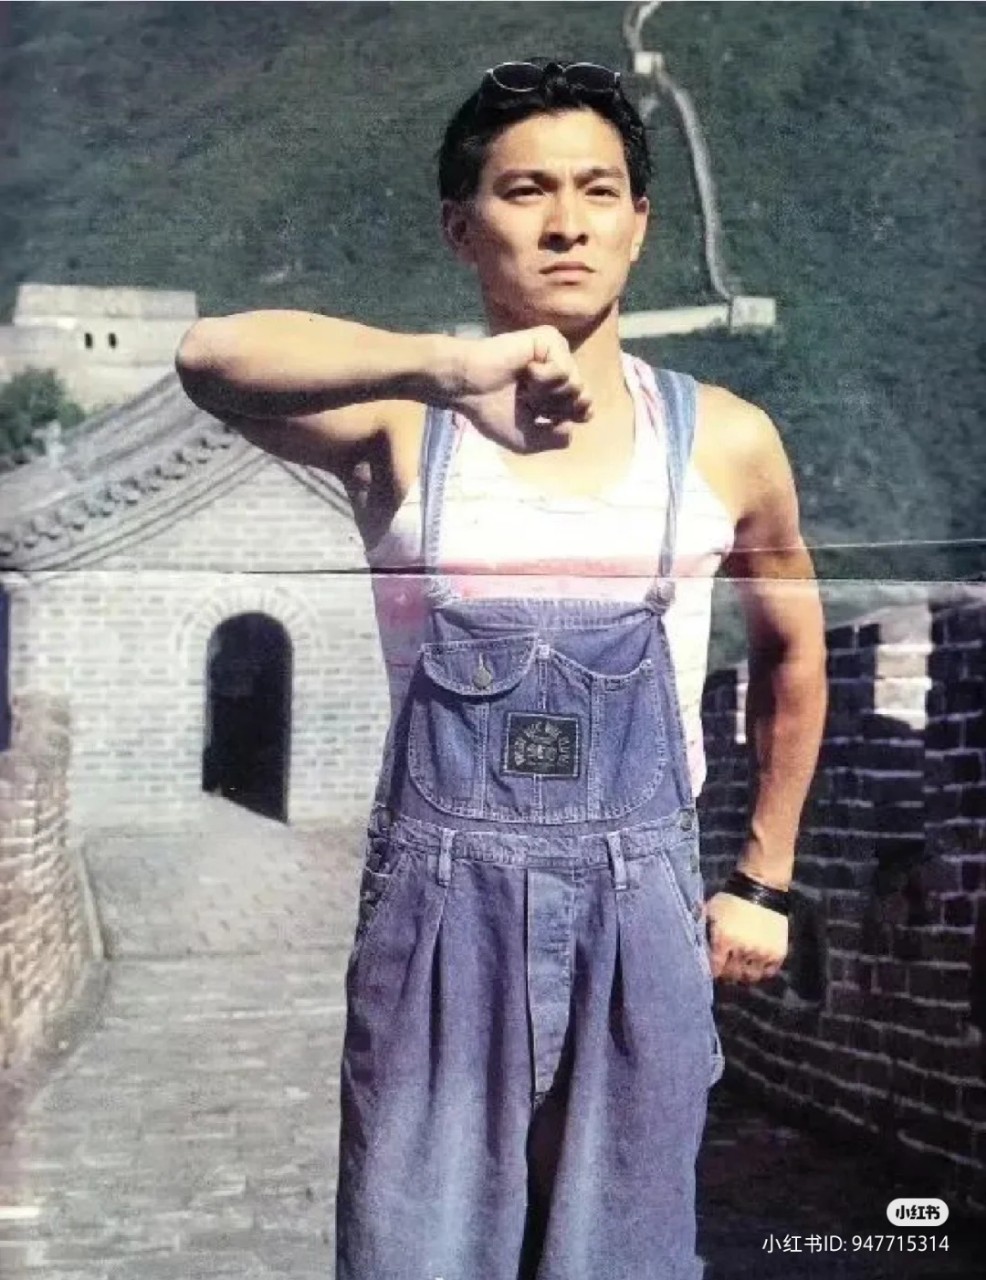 近日网上疯传多张刘德华旧照。